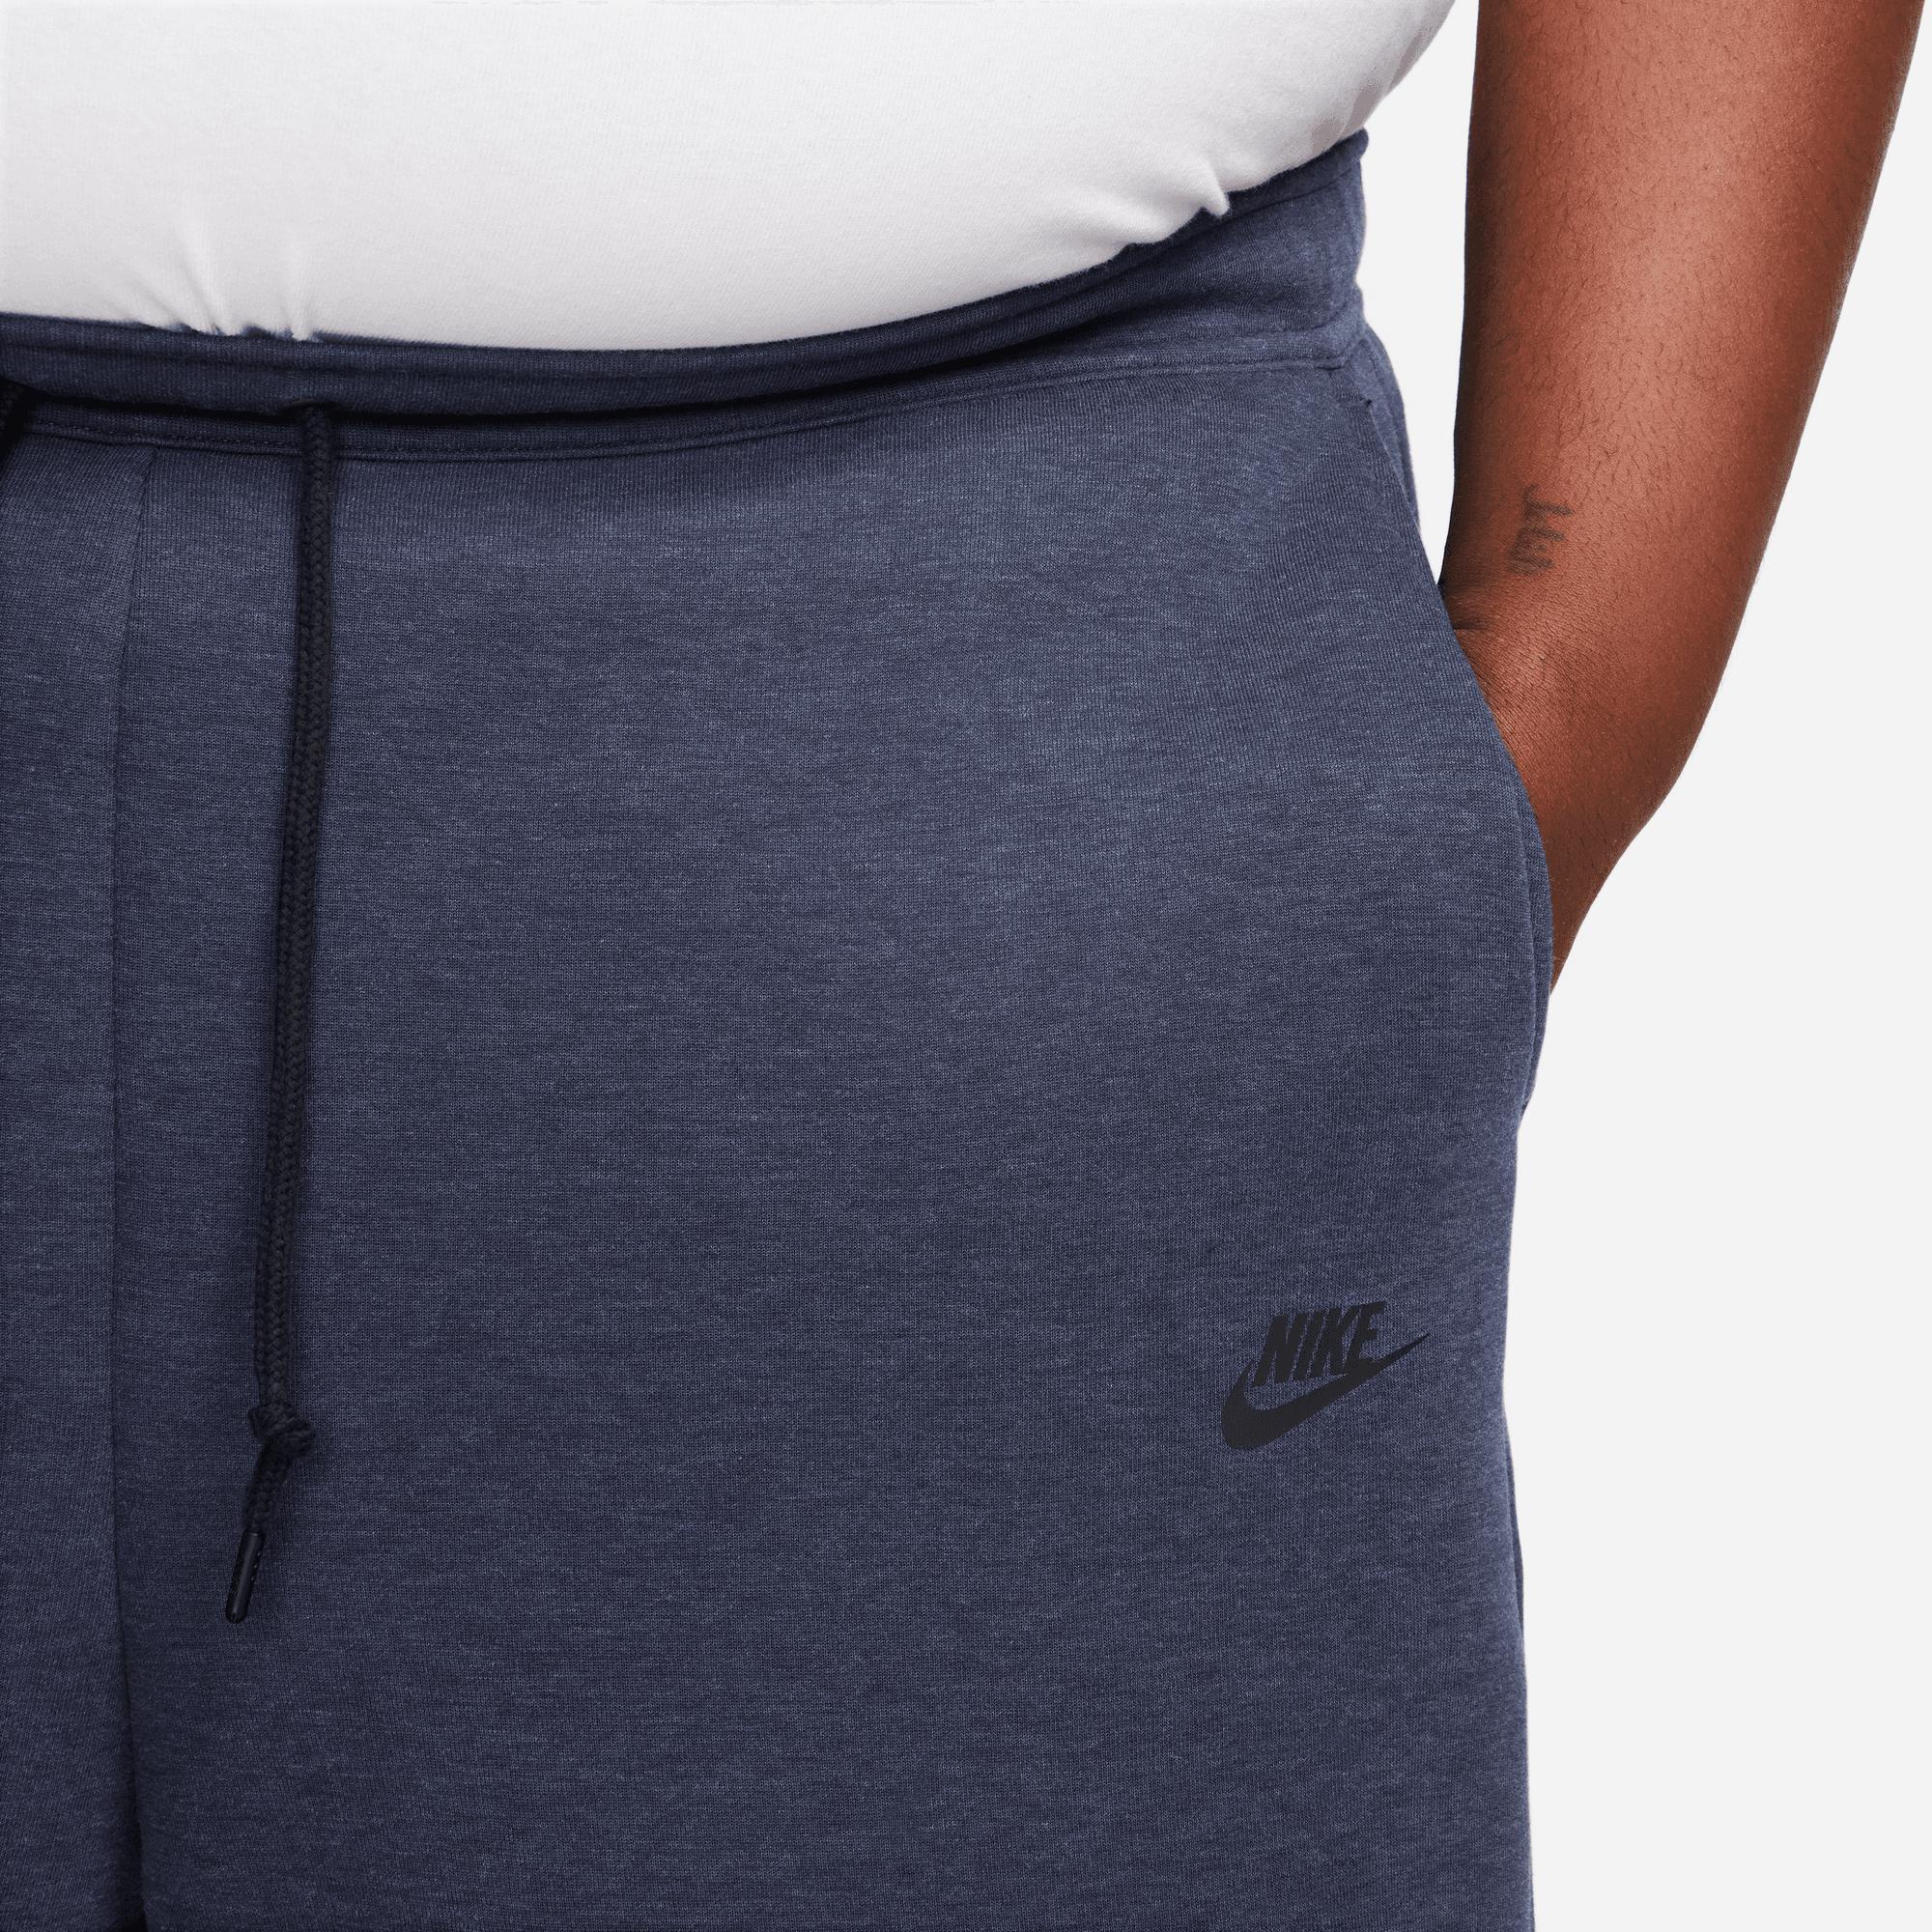 Nike Sportswear Navy Blue Tech Fleece Shorts